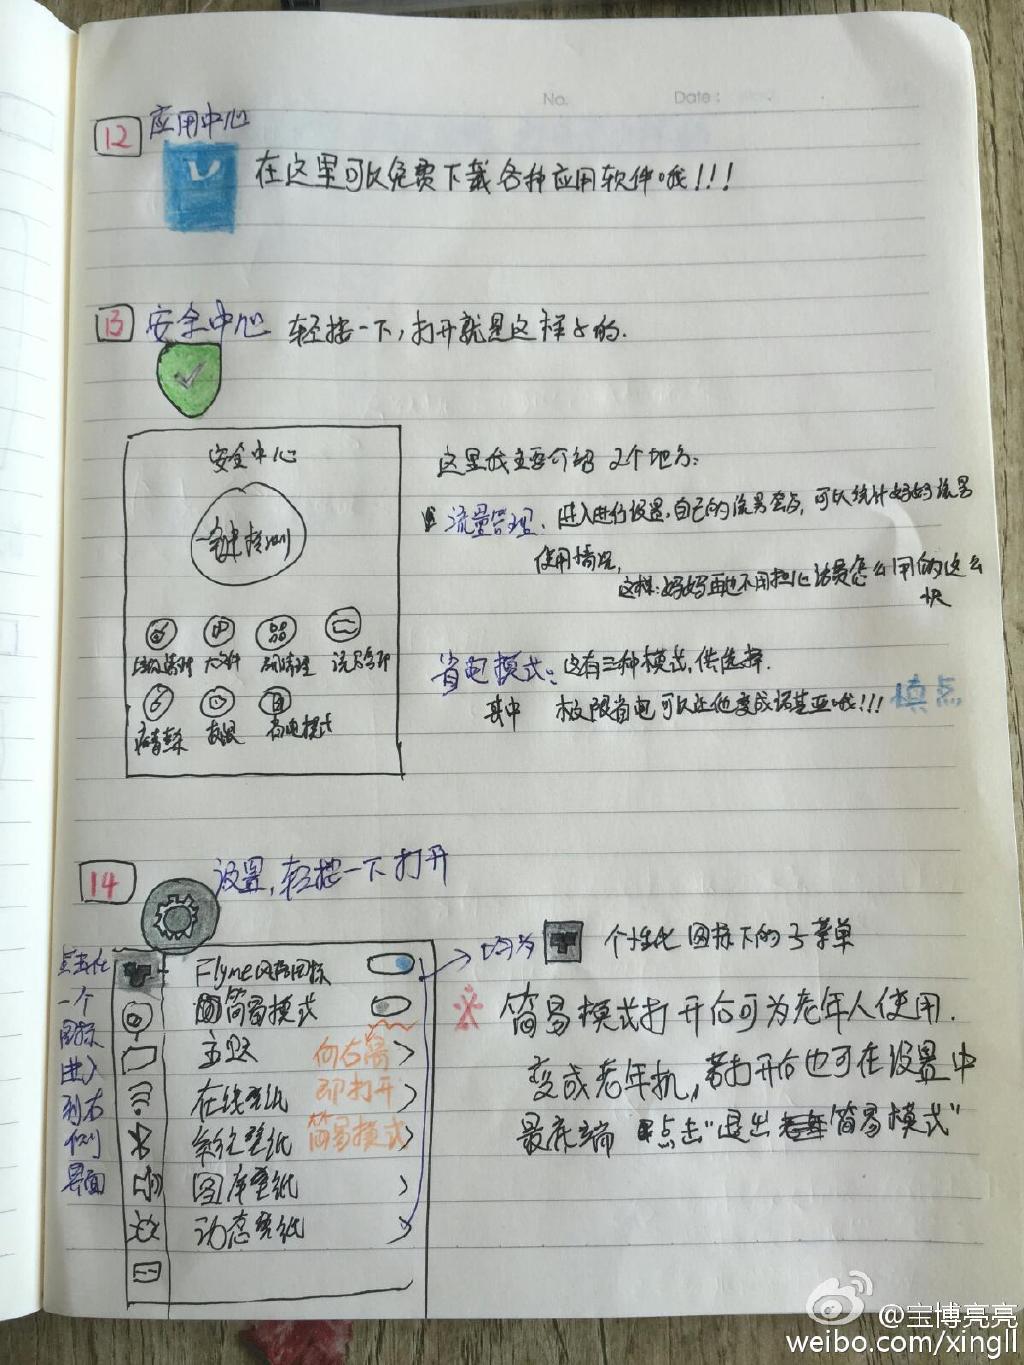 黑龙江小伙画14页教程 教妈妈用智能手机